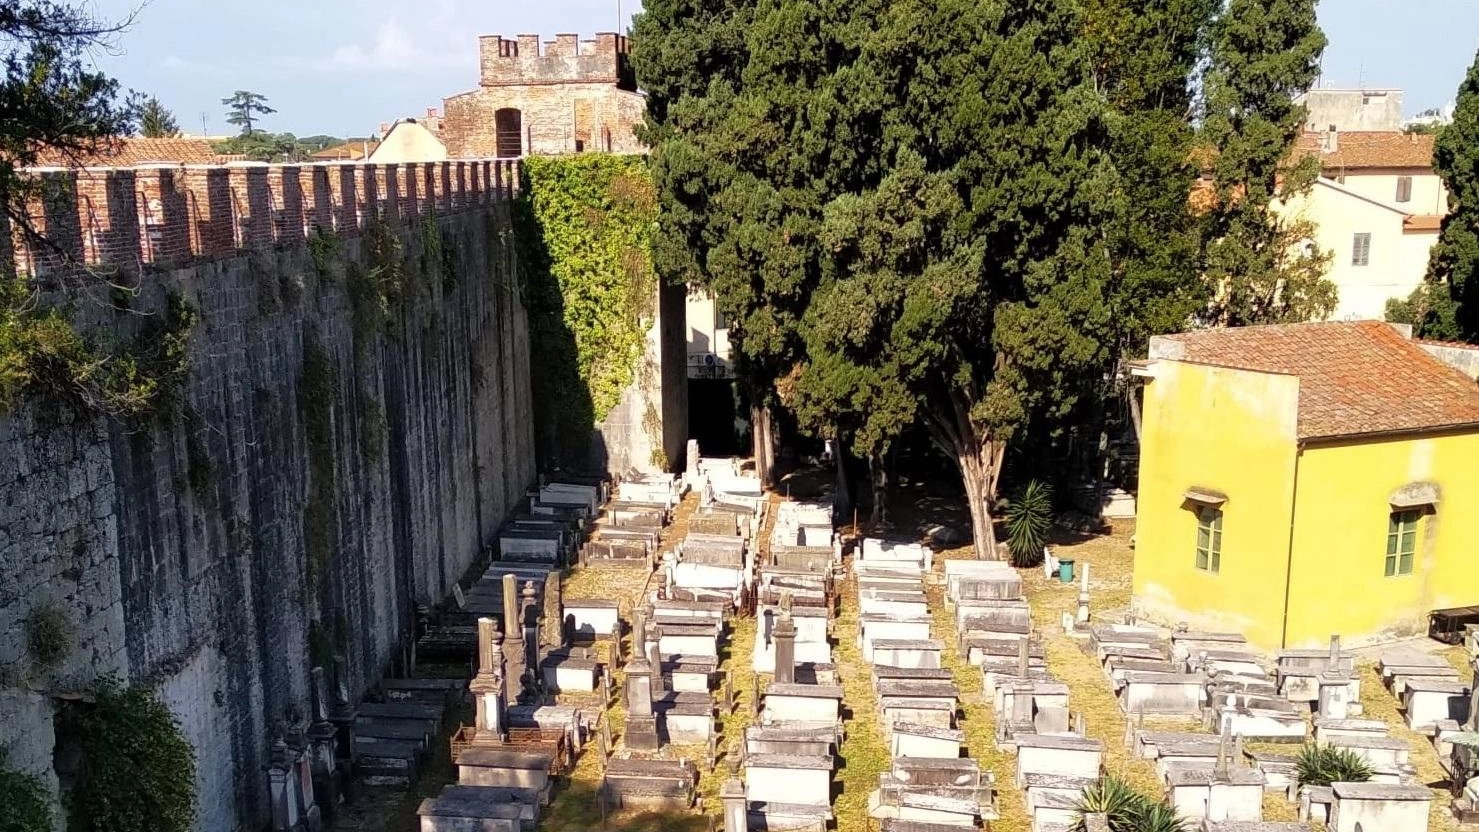 

Visita alla Sinagoga di Pisa: visite, libri, convegno, teatro e defibrillatore